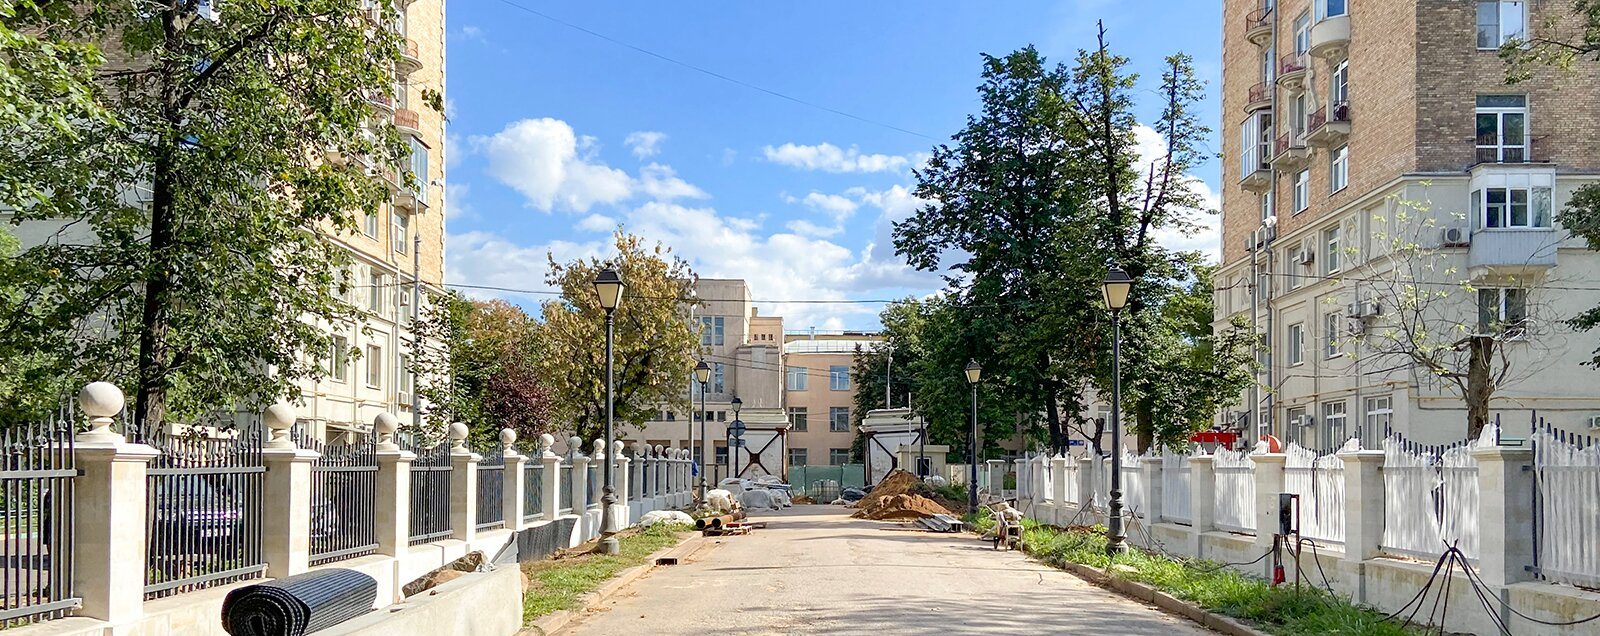 Реставраторы выровняли правый пилон парадных ворот Александринского дворца. Фото: сайт мэра Москвы